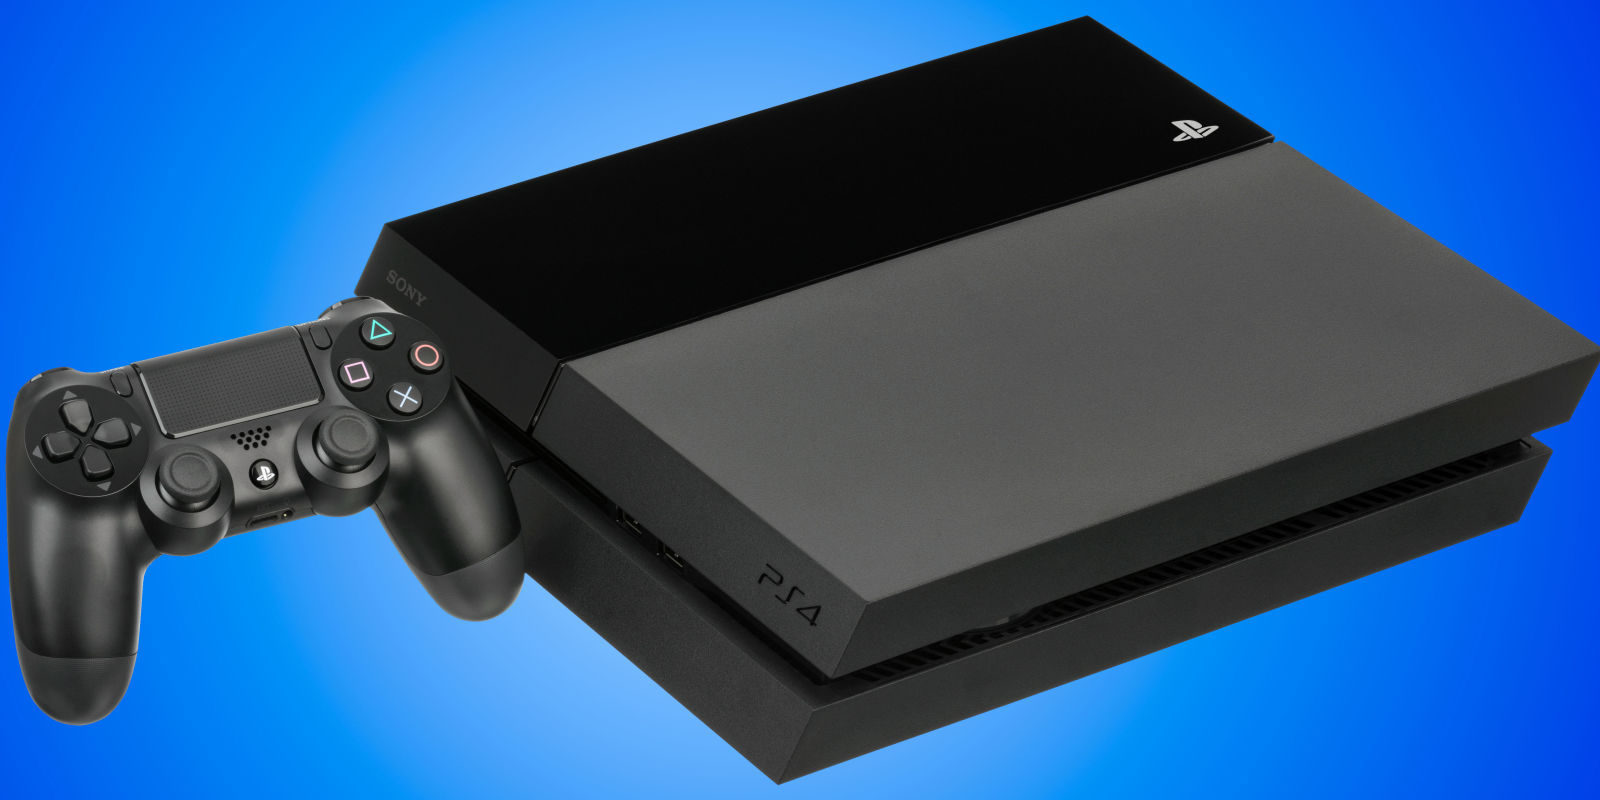 Sony predice que PS4 alcanzará los 60 millones de consolas distribuidas en abril de 2017